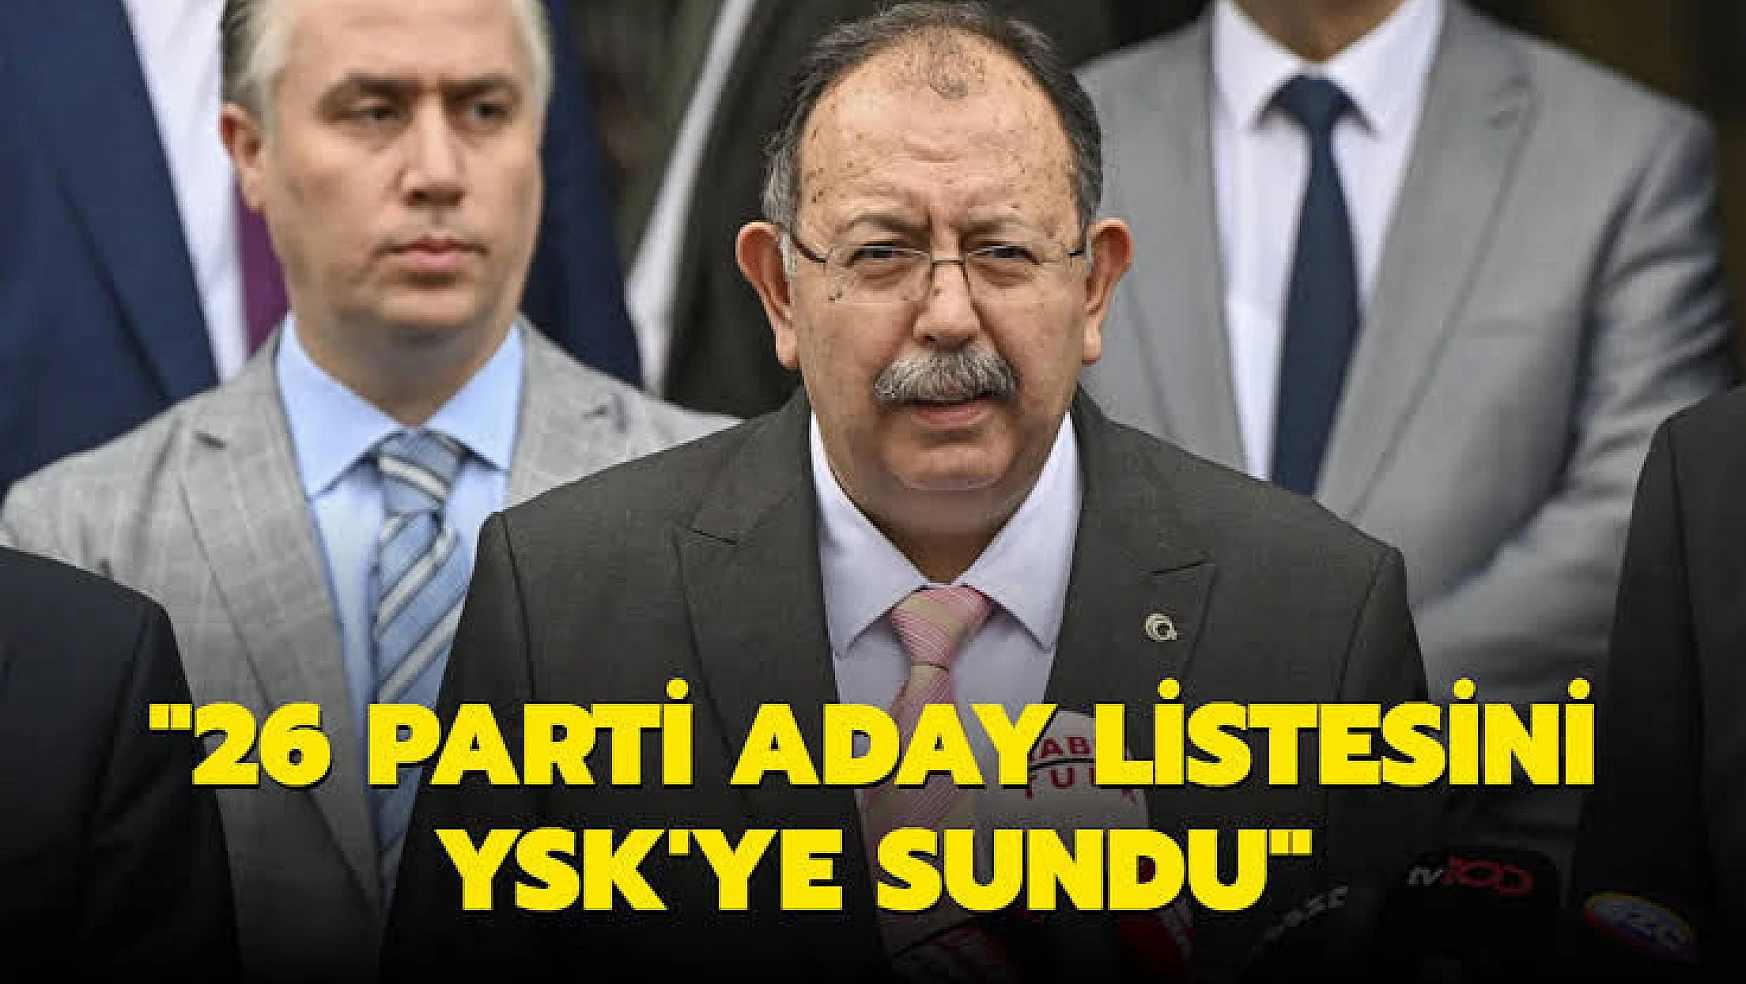 YSK Başkanı Yener: 'Toplam 26 parti milletvekilliği aday listesini YSK'ya sundu